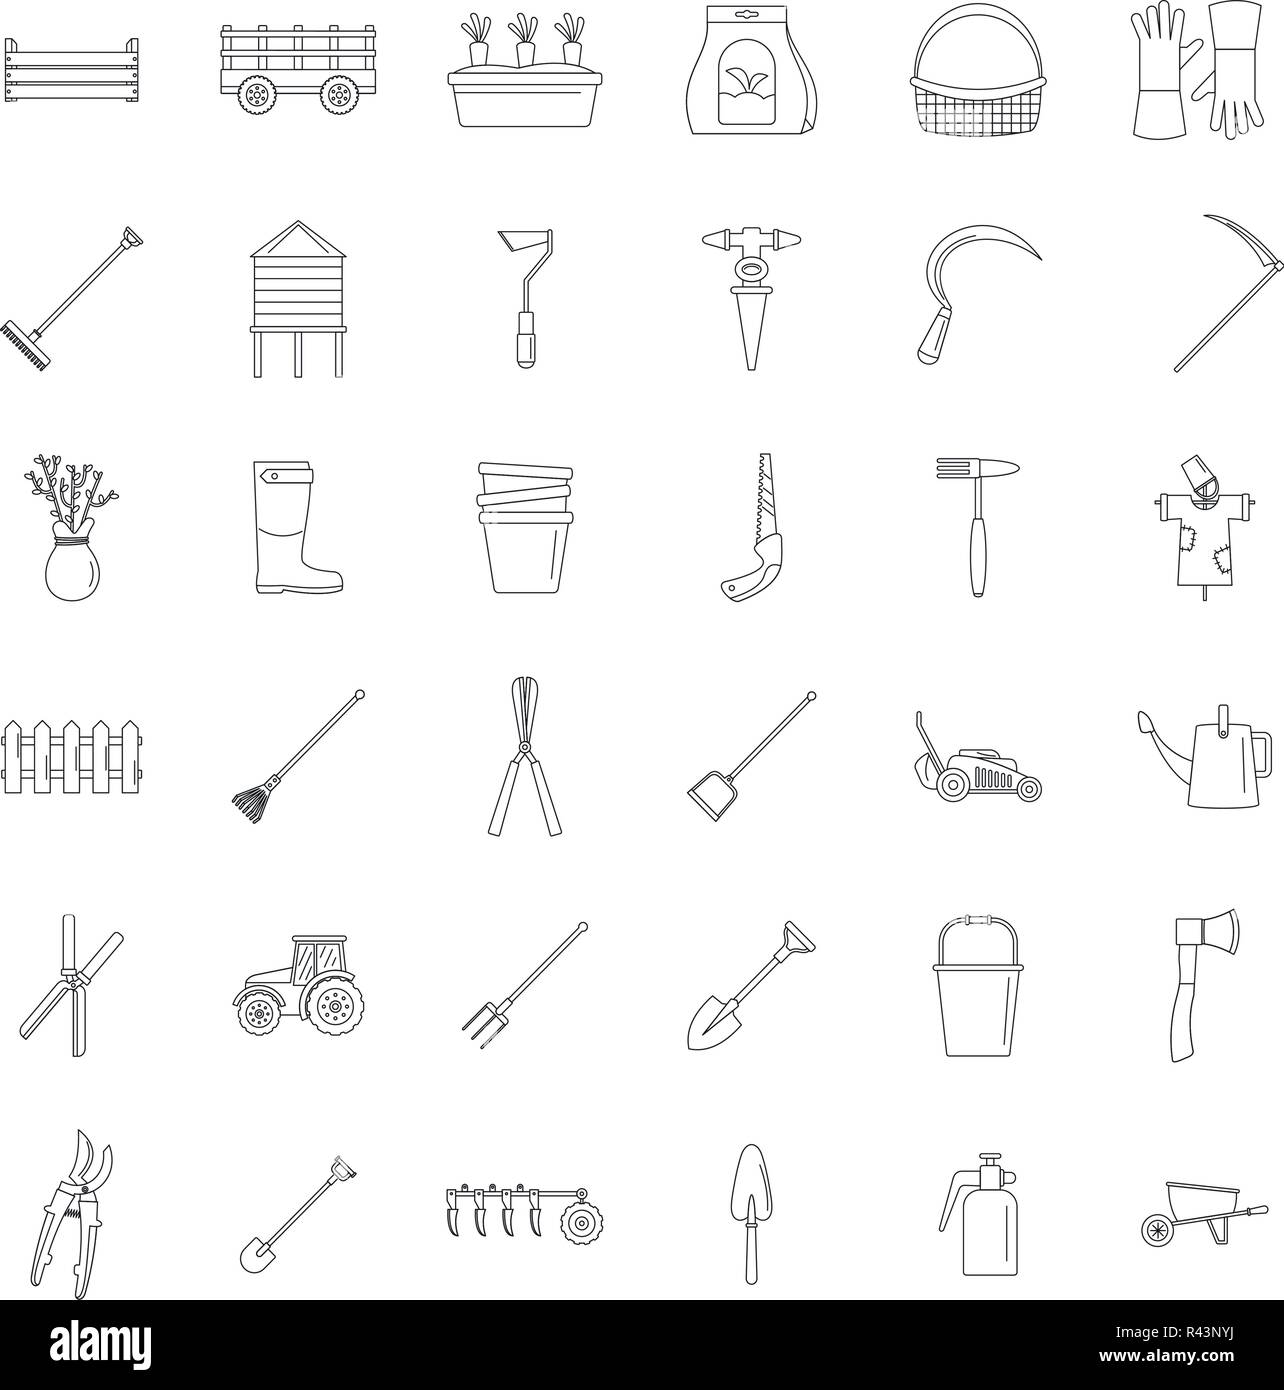 Landwirtschaftliche Geräte Garten Symbole gesetzt. Überblick Abbildung: 25 landwirtschaftliche Geräte Garten Vector Icons für Web Stock Vektor